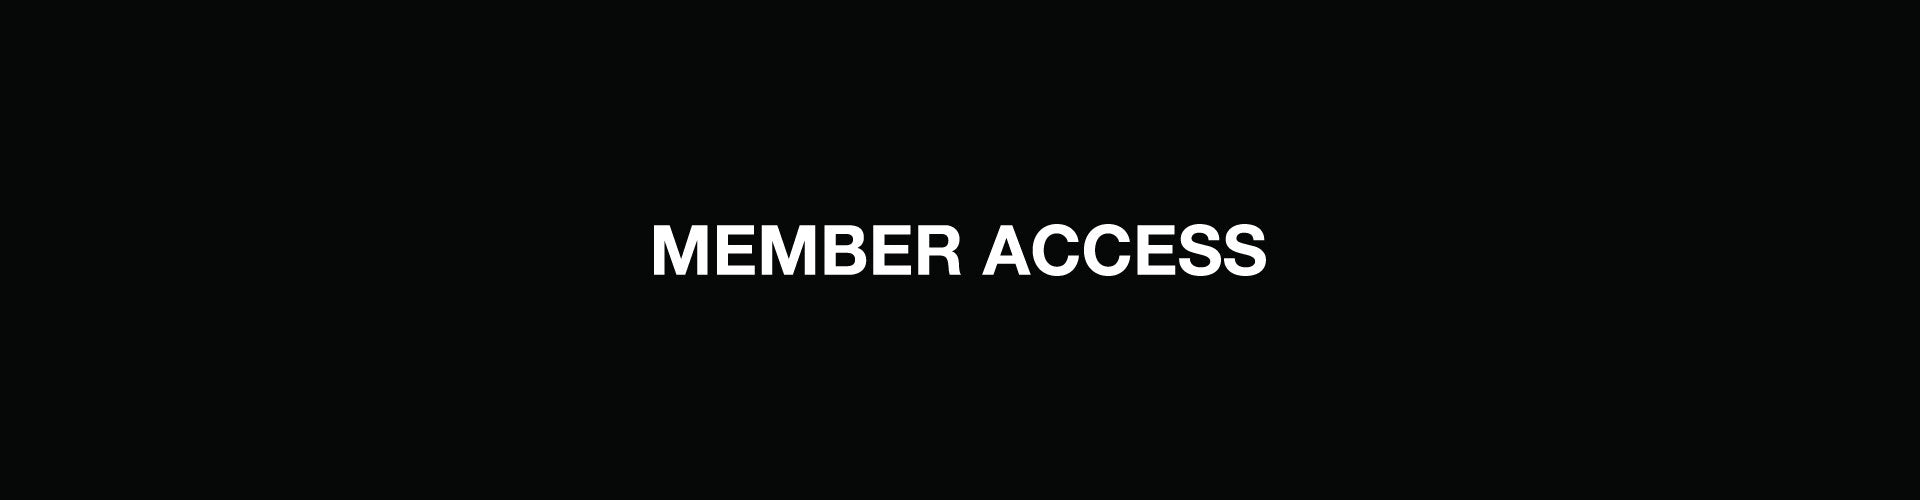 Member Access